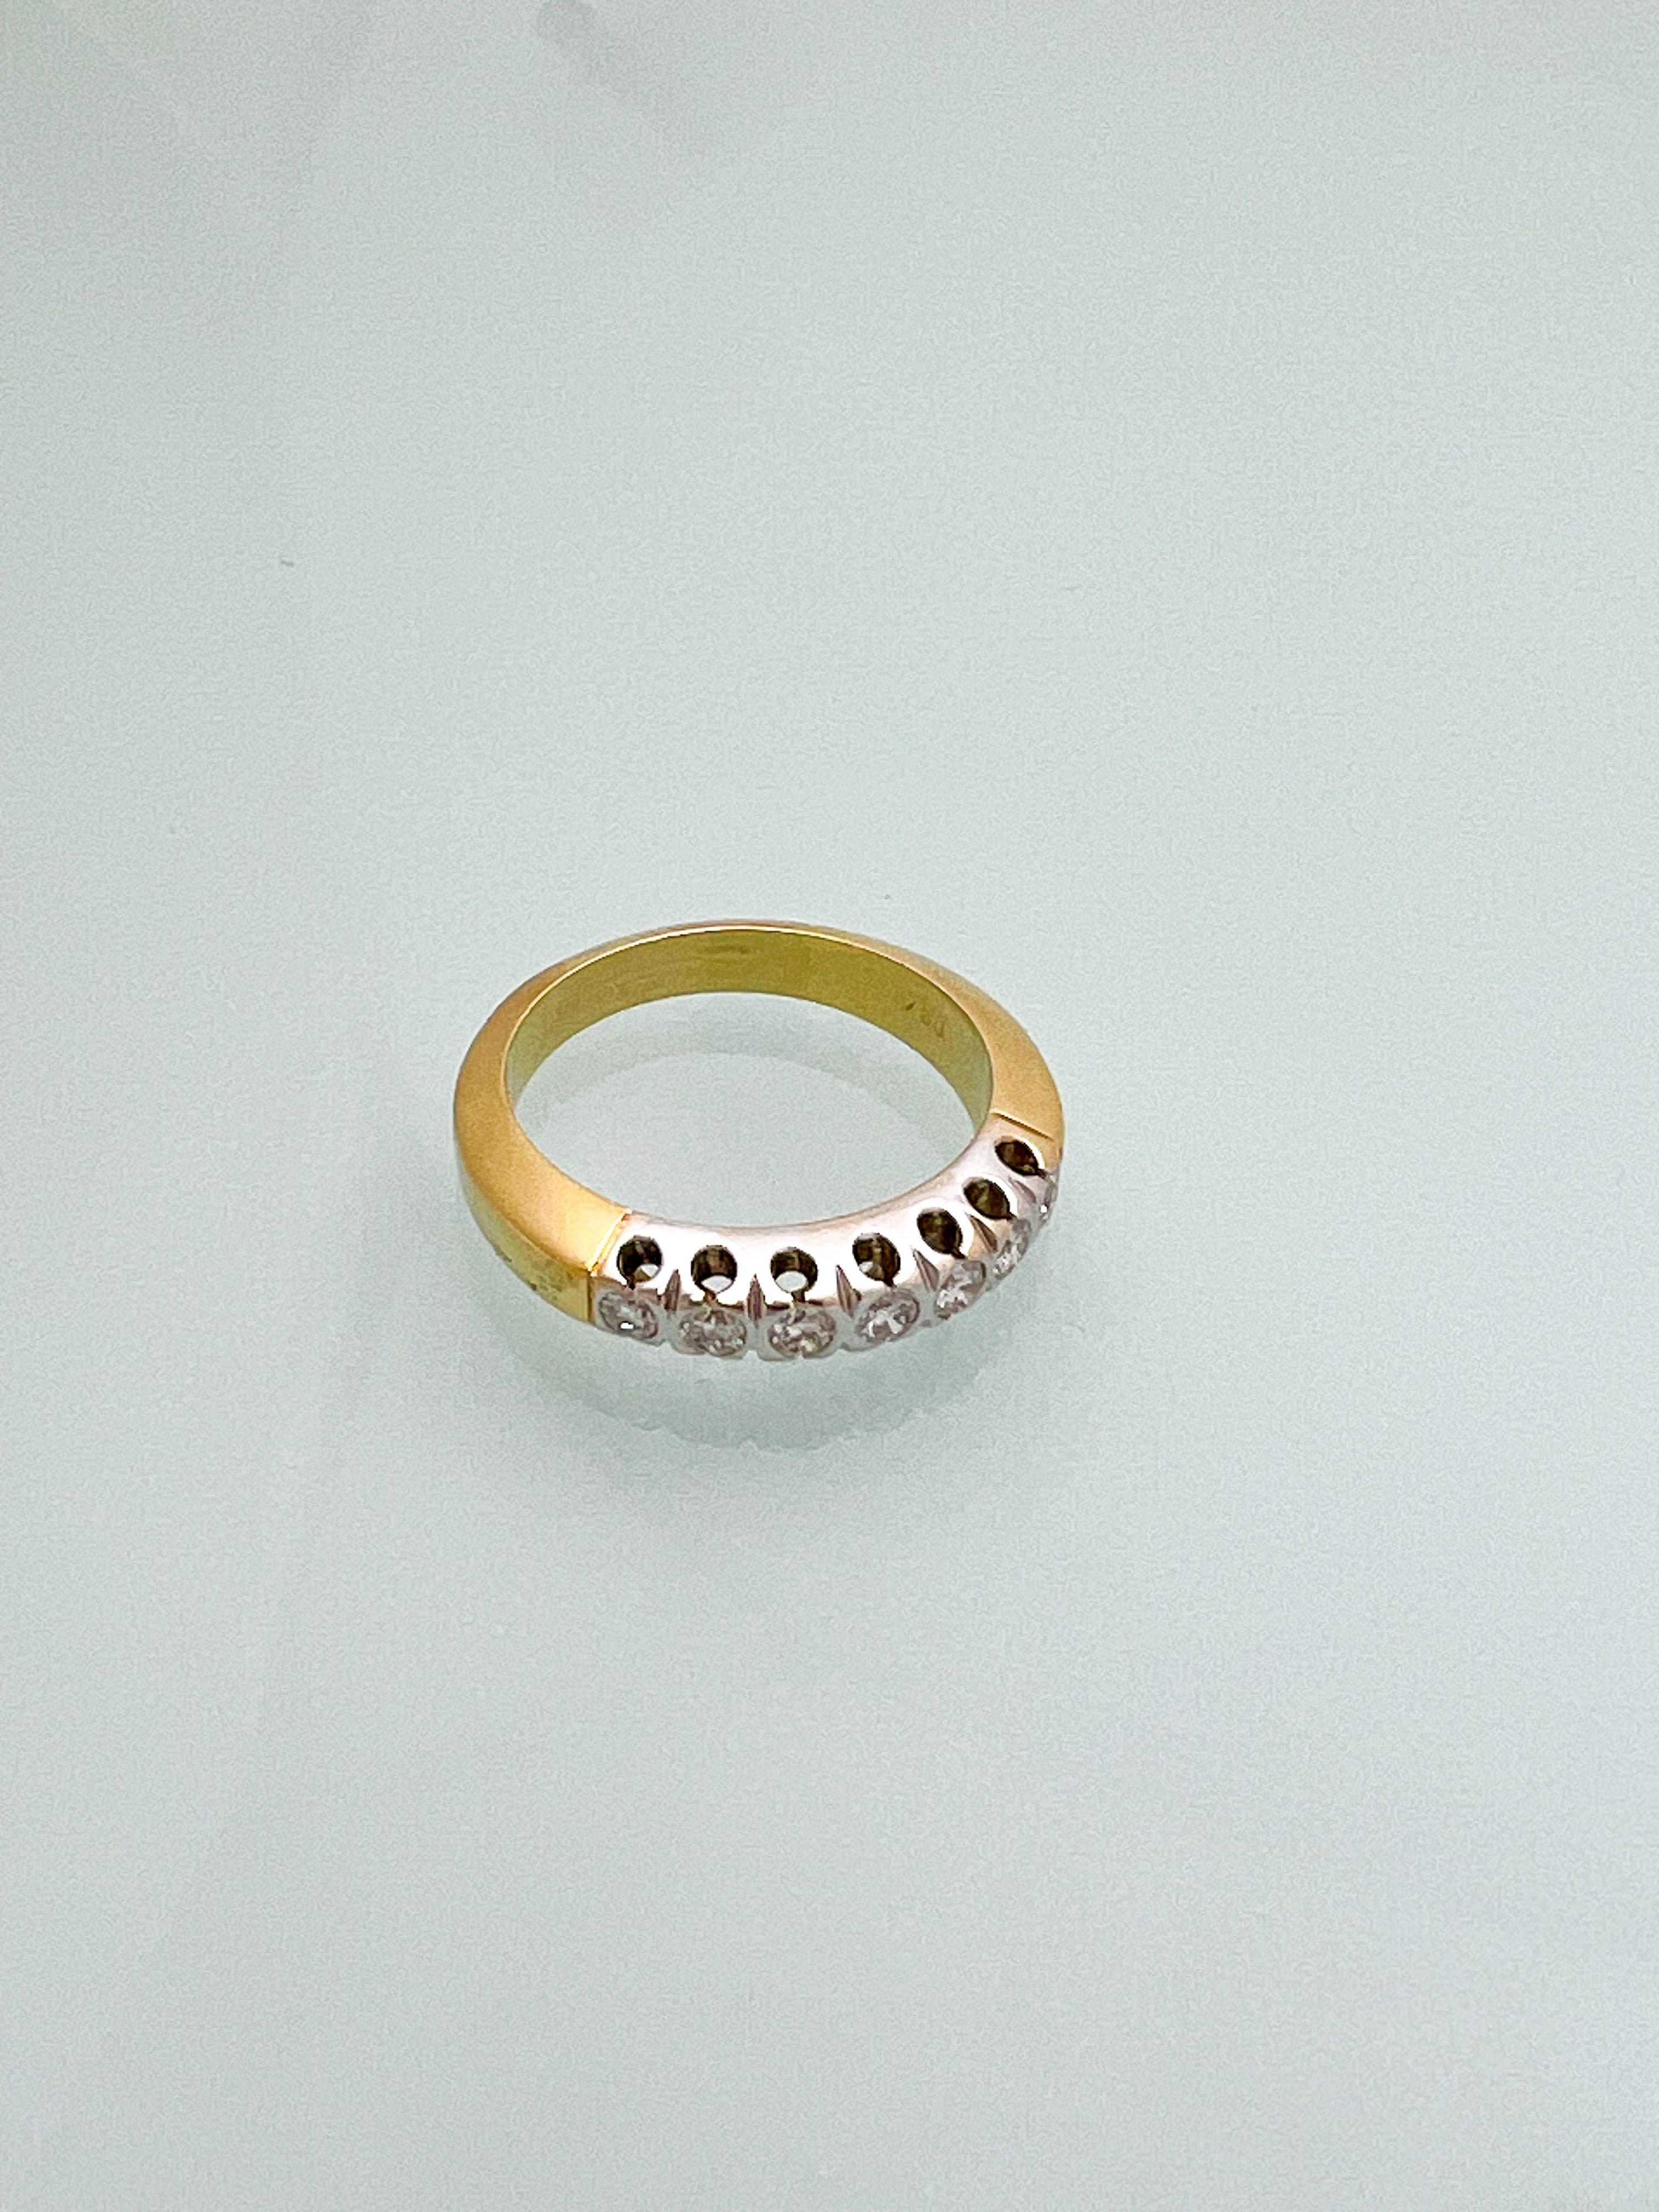 טבעת 18 קארט משולבת זהב צהוב ולבן עם שיבוץ יהלומים